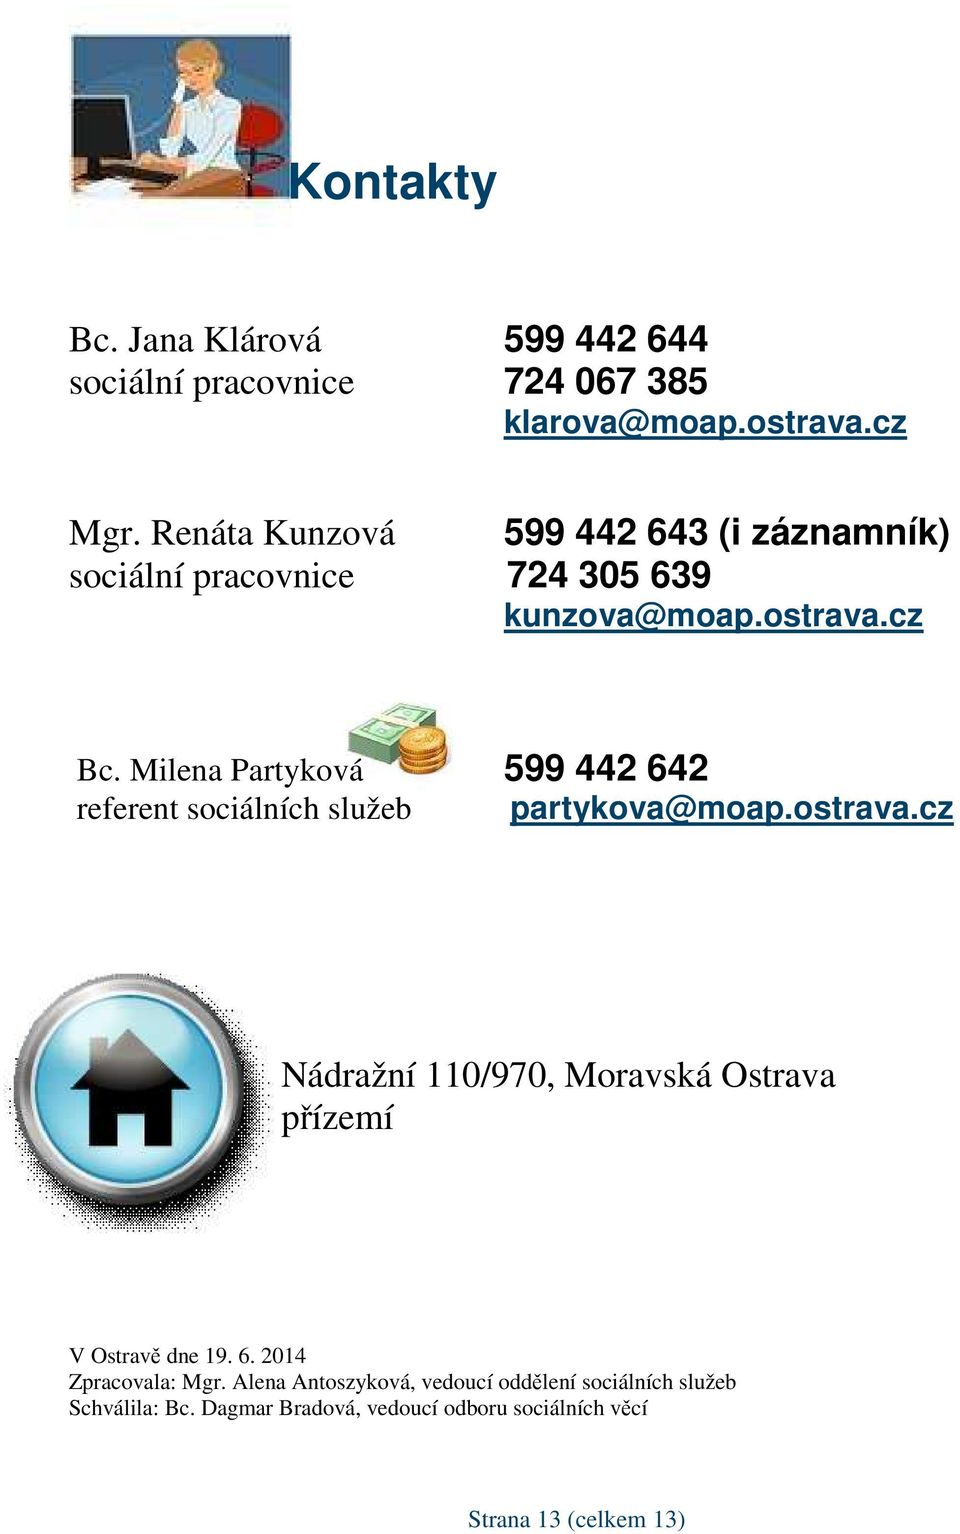 Milena Partyková 599 442 642 referent sociálních služeb partykova@moap.ostrava.